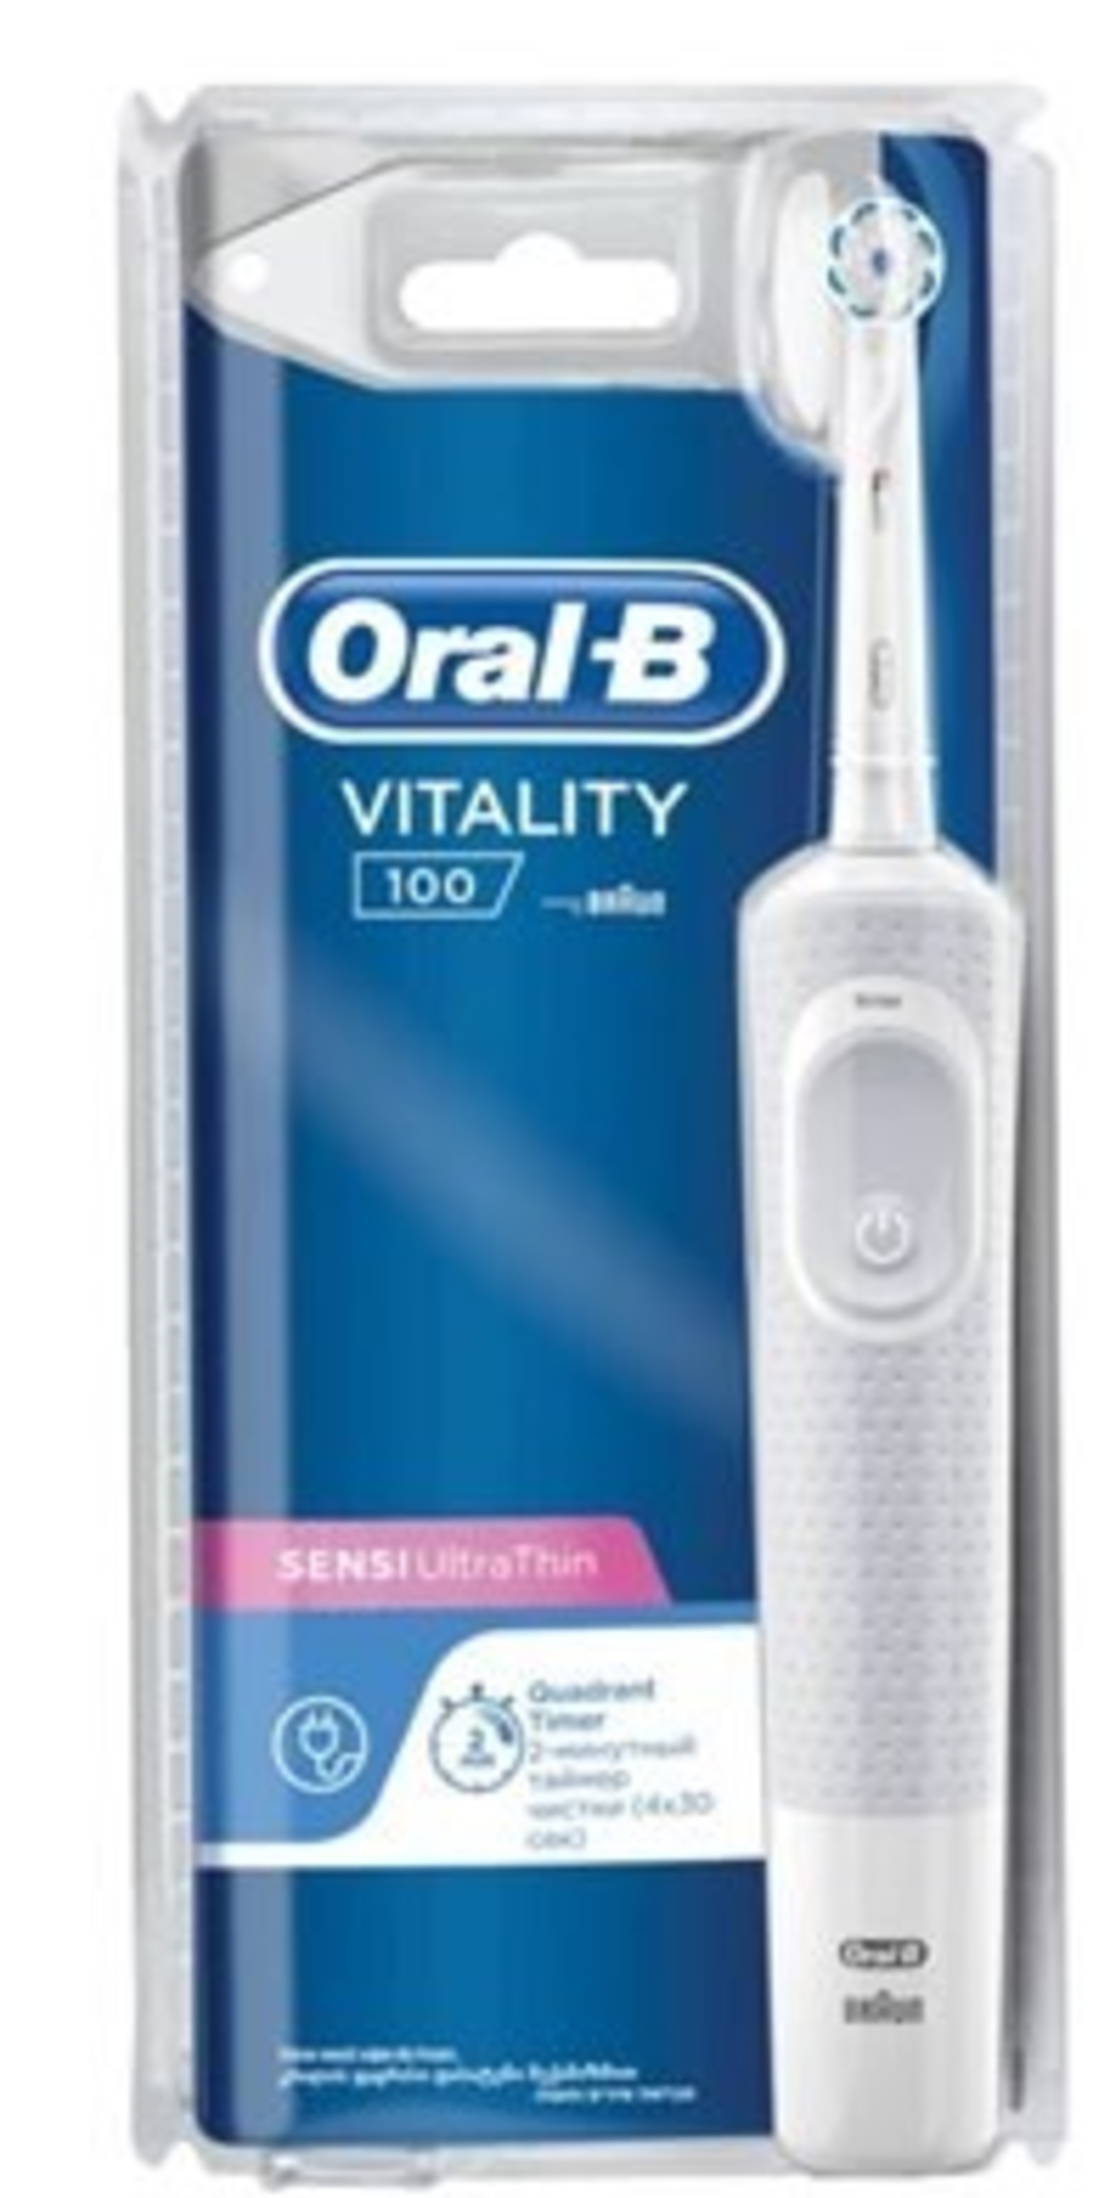 מברשת שיניים חשמלית למבוגרים אורל בי - Oral B